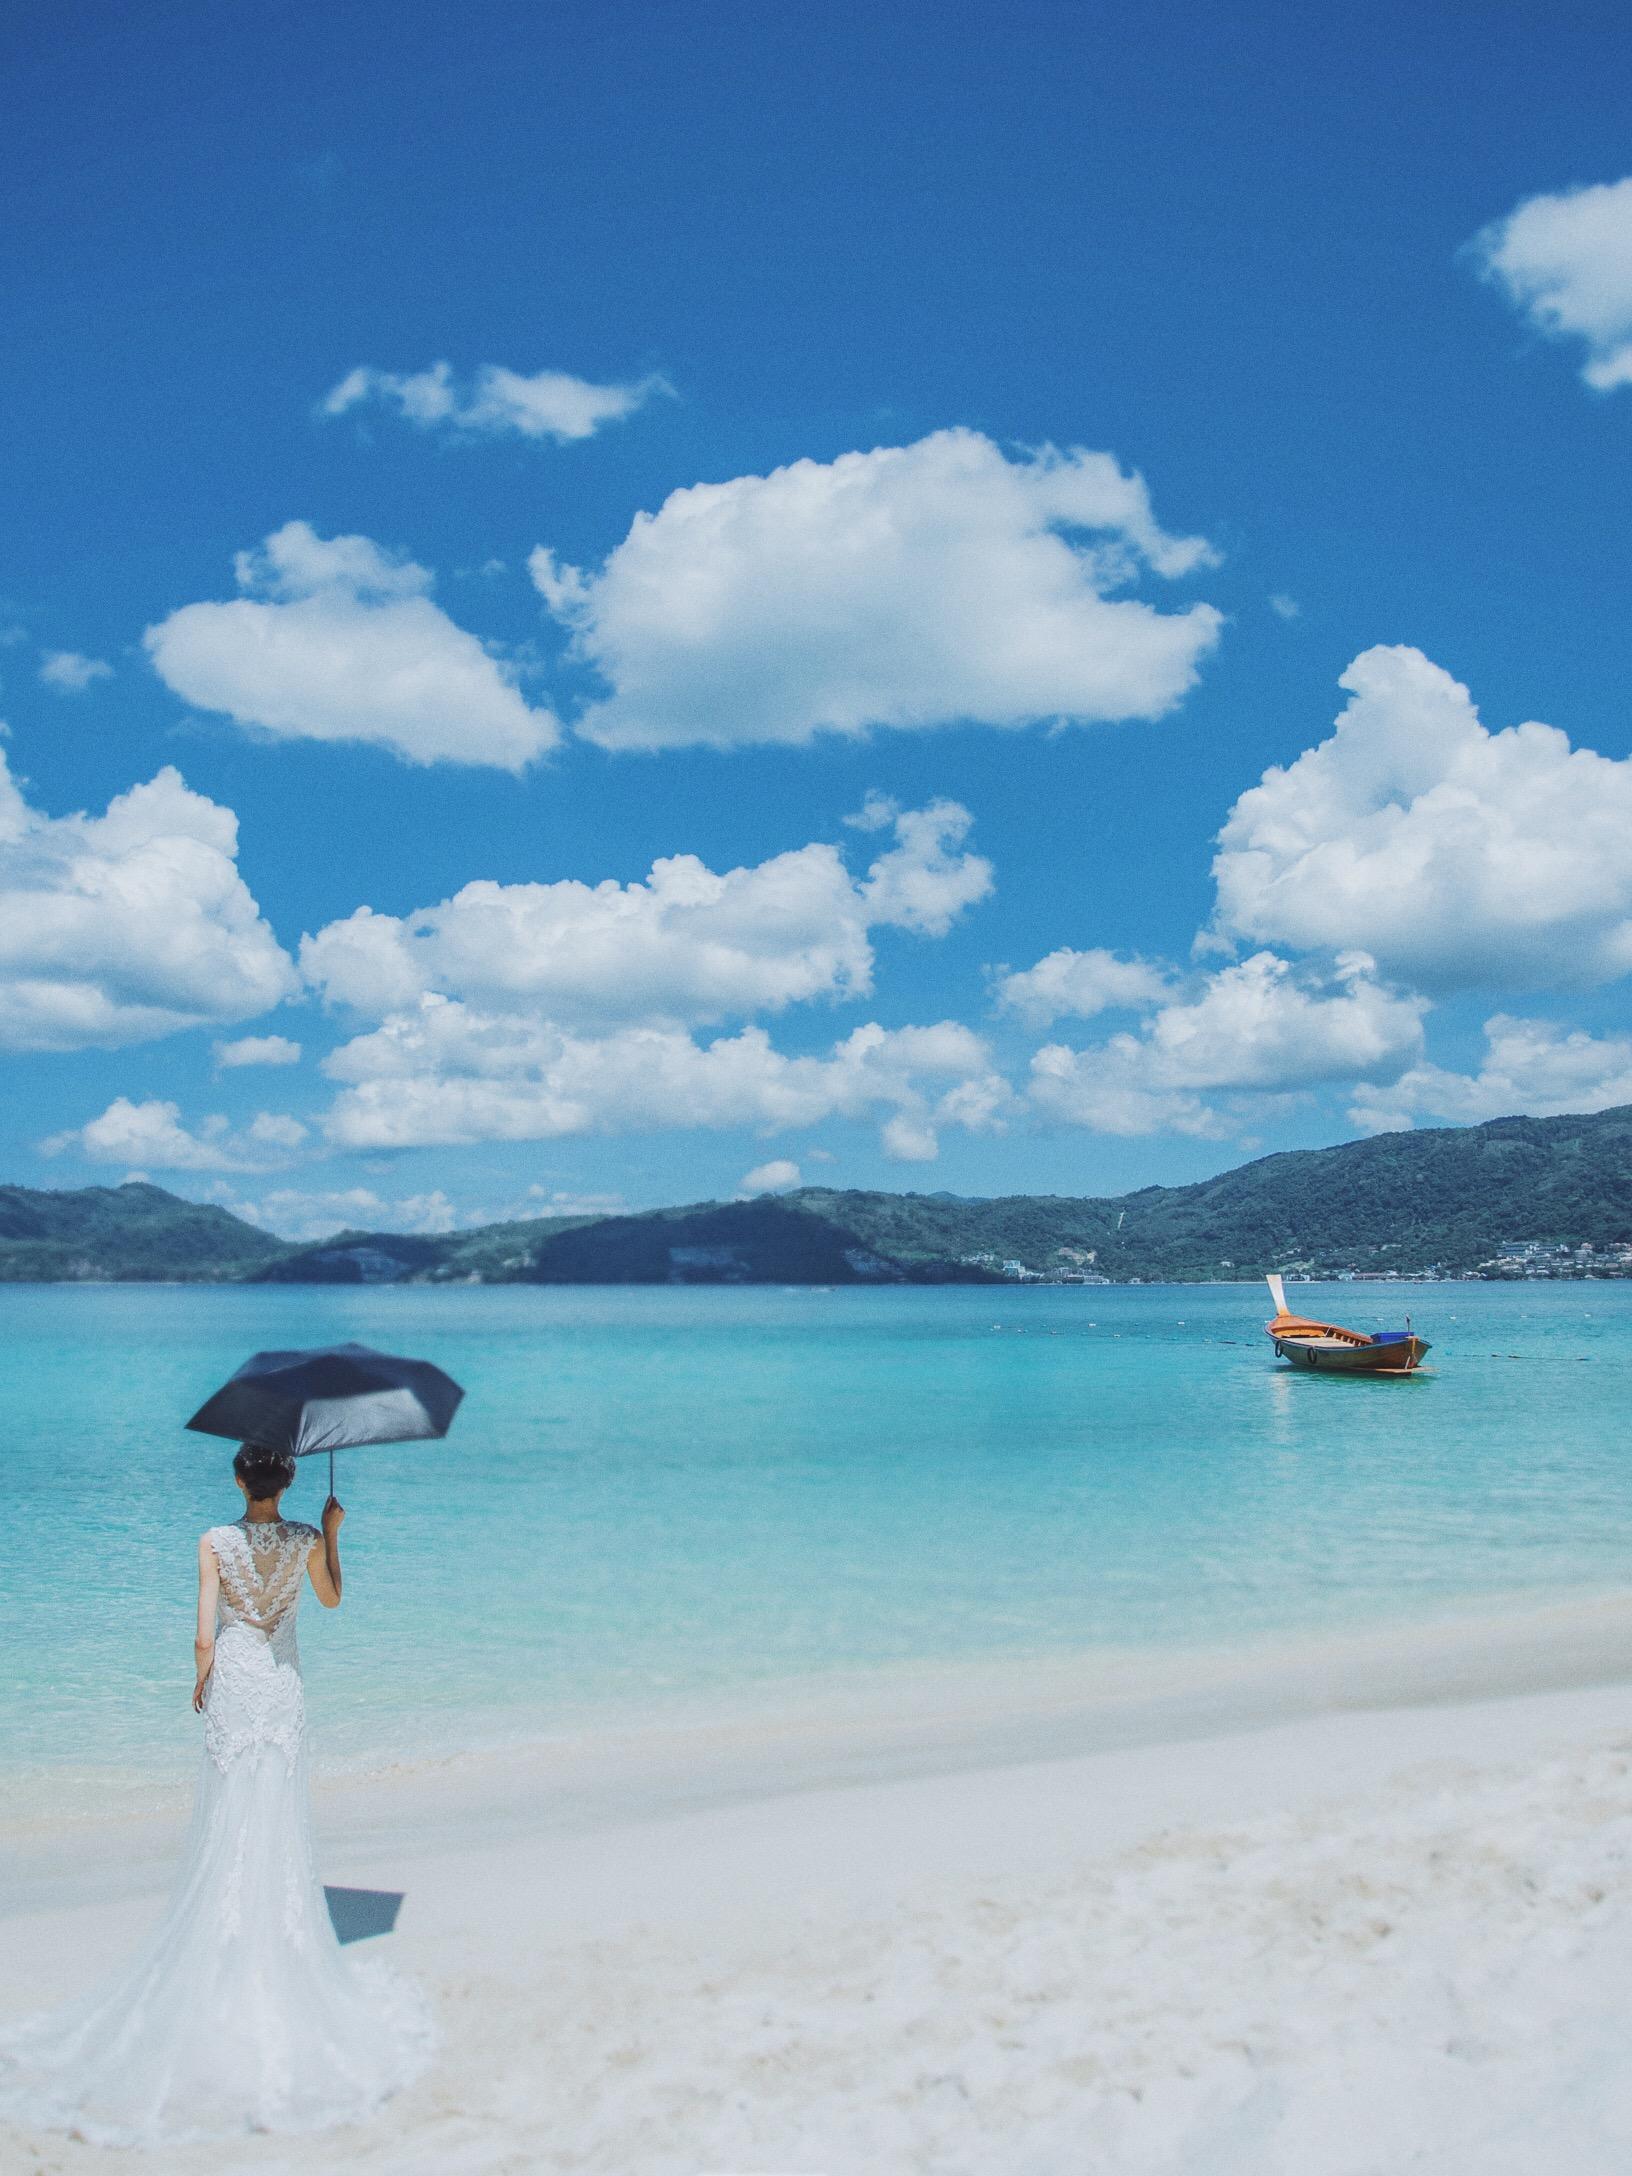 【泰国旅拍】#普吉岛# 爱到最美是陪伴